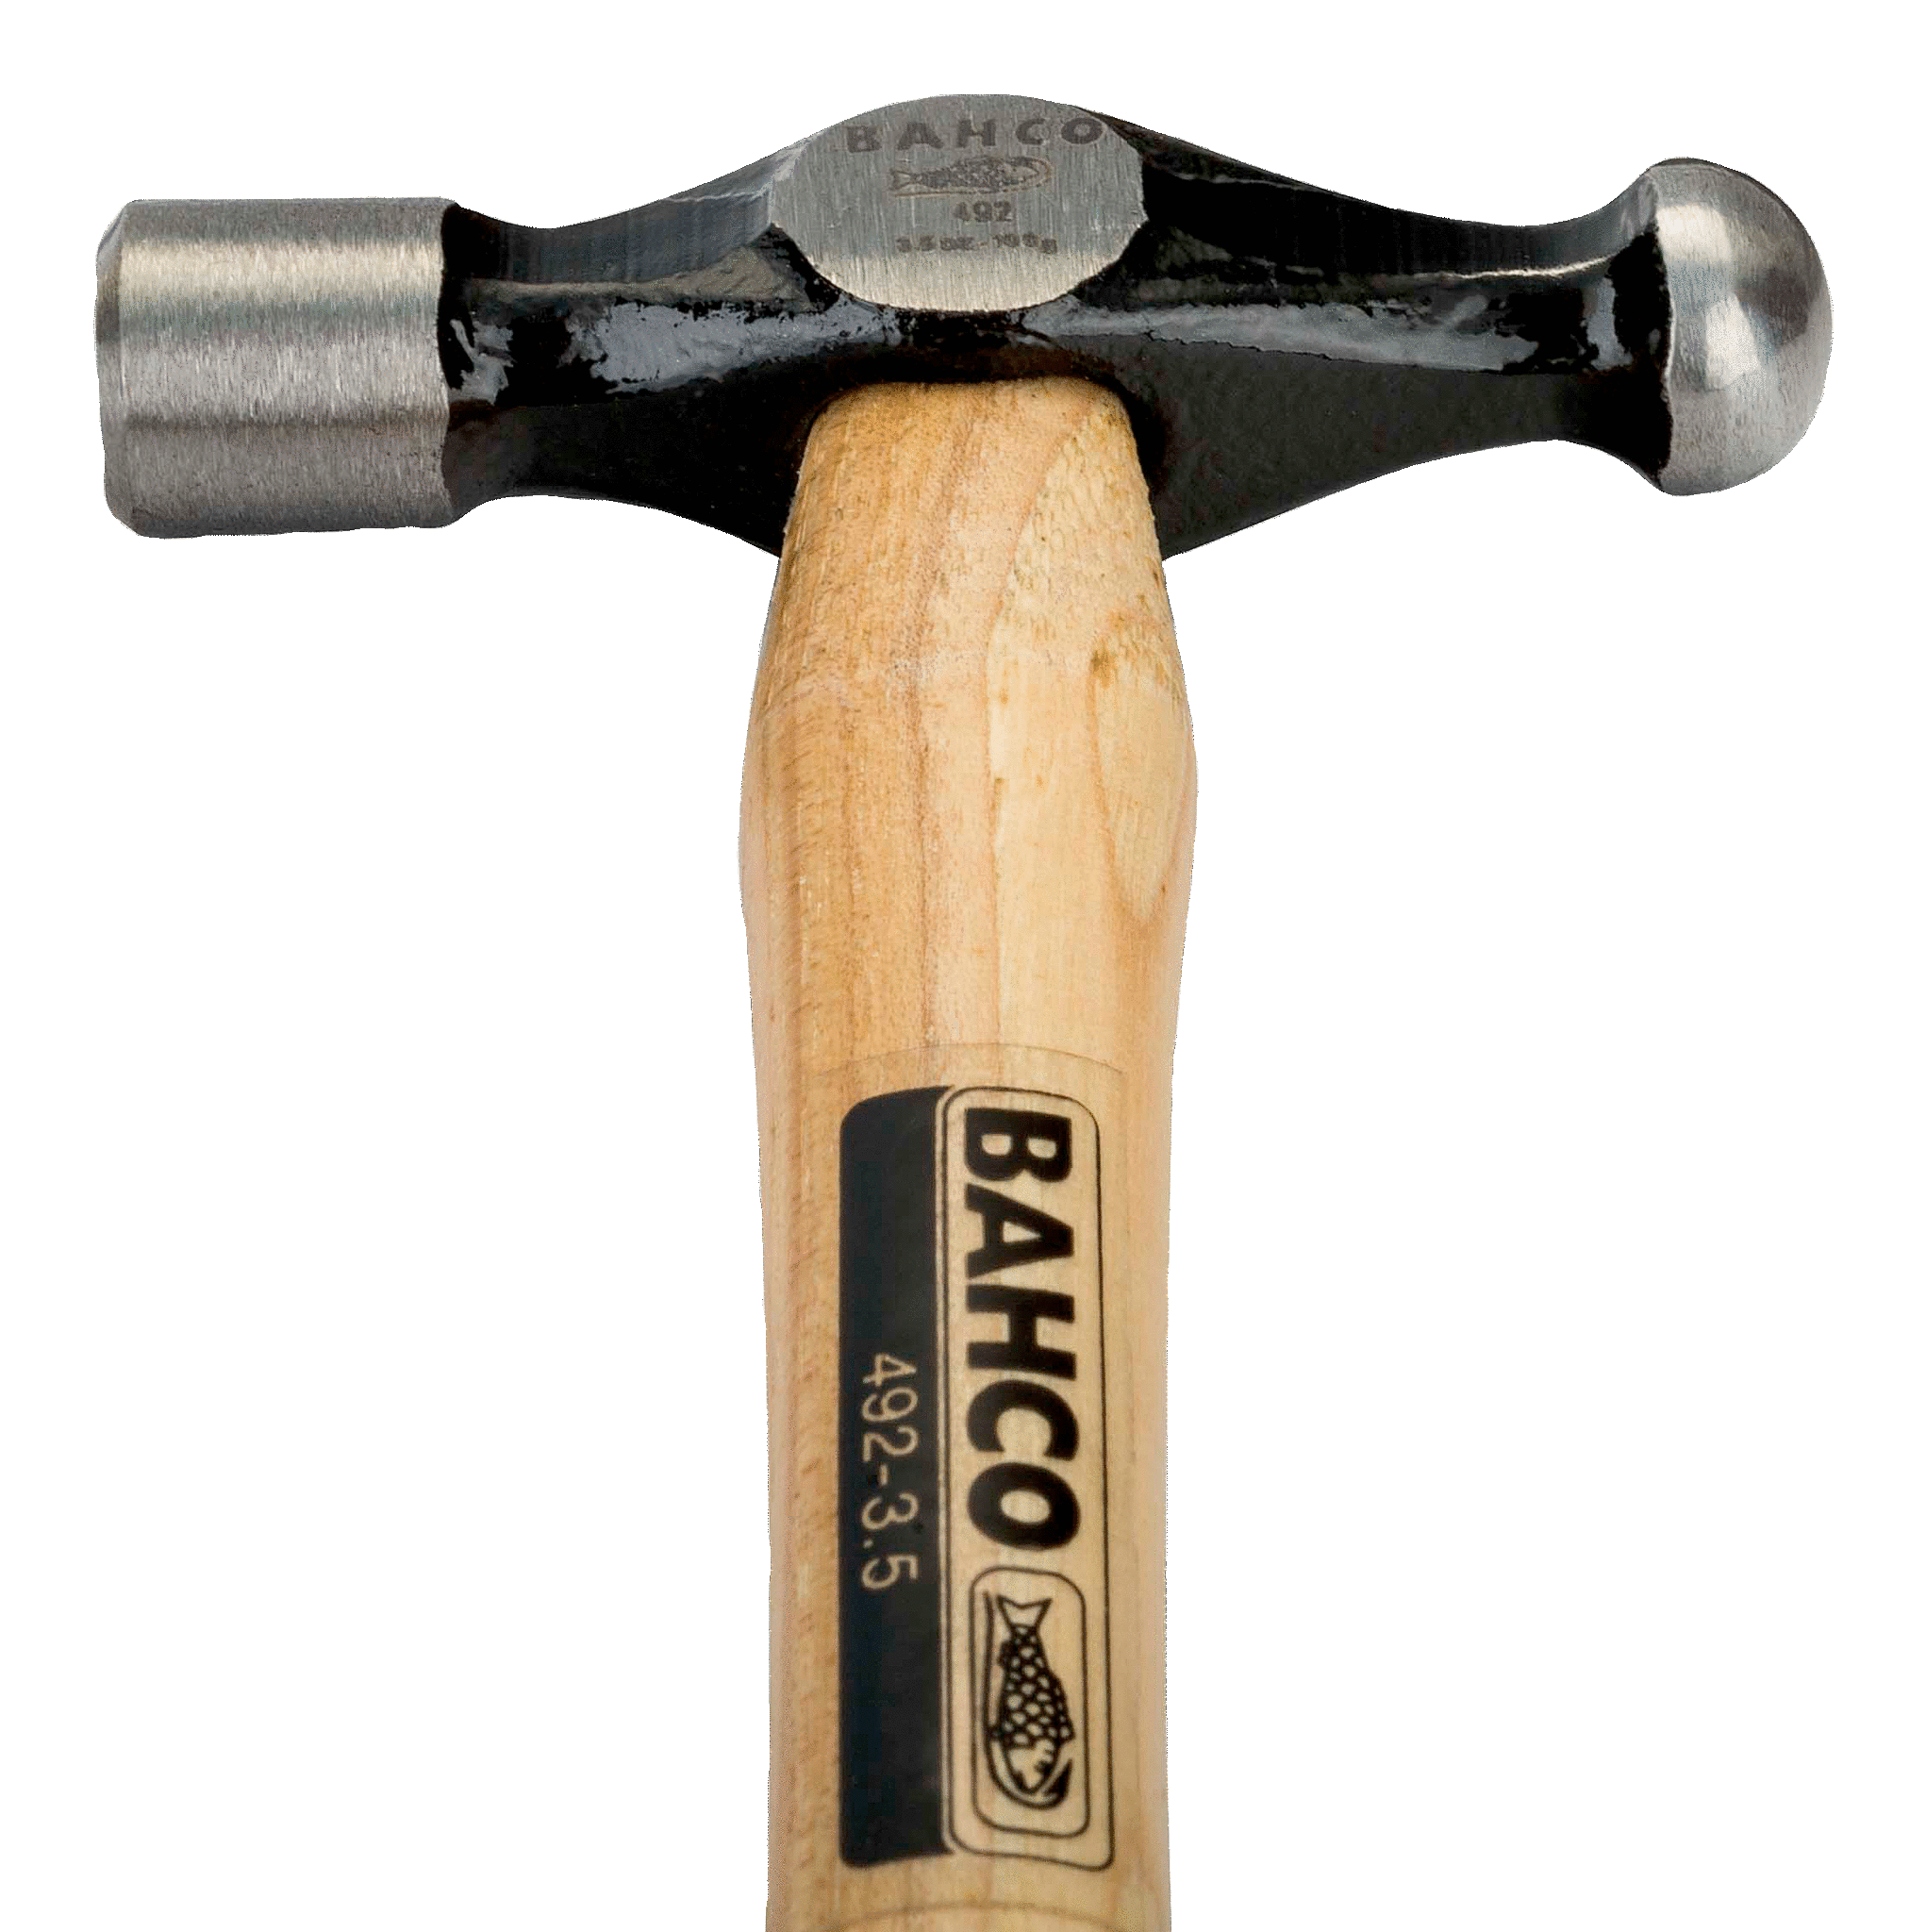 картинка Рихтовочный молоток с круглым бойком, деревянная рукоятка BAHCO 492 от магазина "Элит-инструмент"